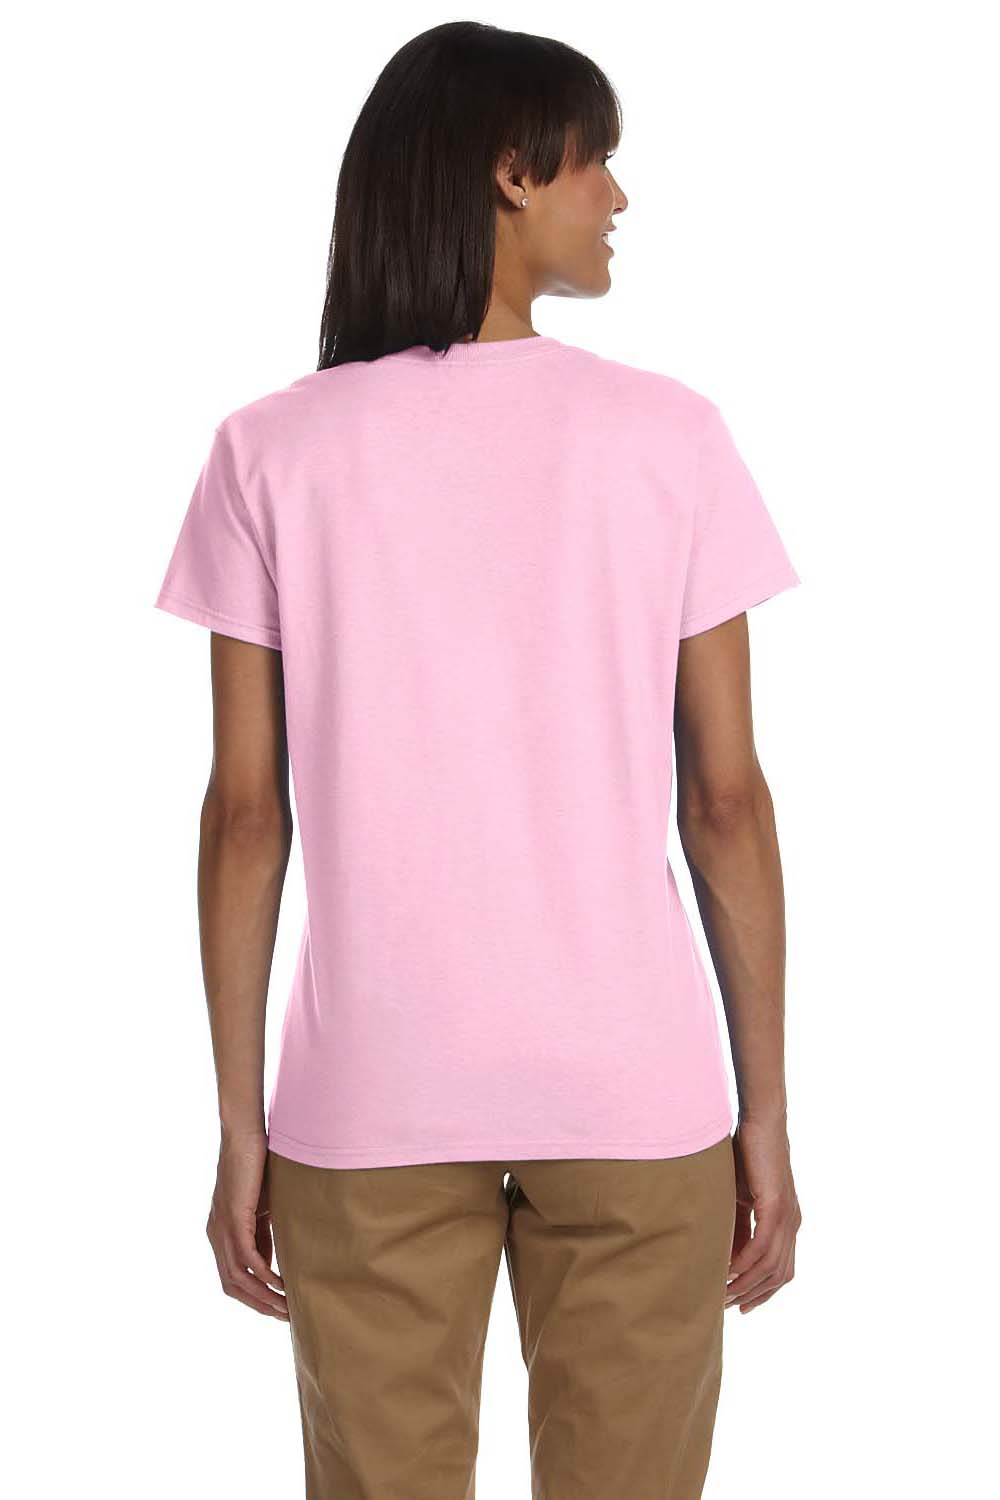 Gildan G200L Womens Ultra Short Sleeve Crewneck T-Shirt Light Pink Back